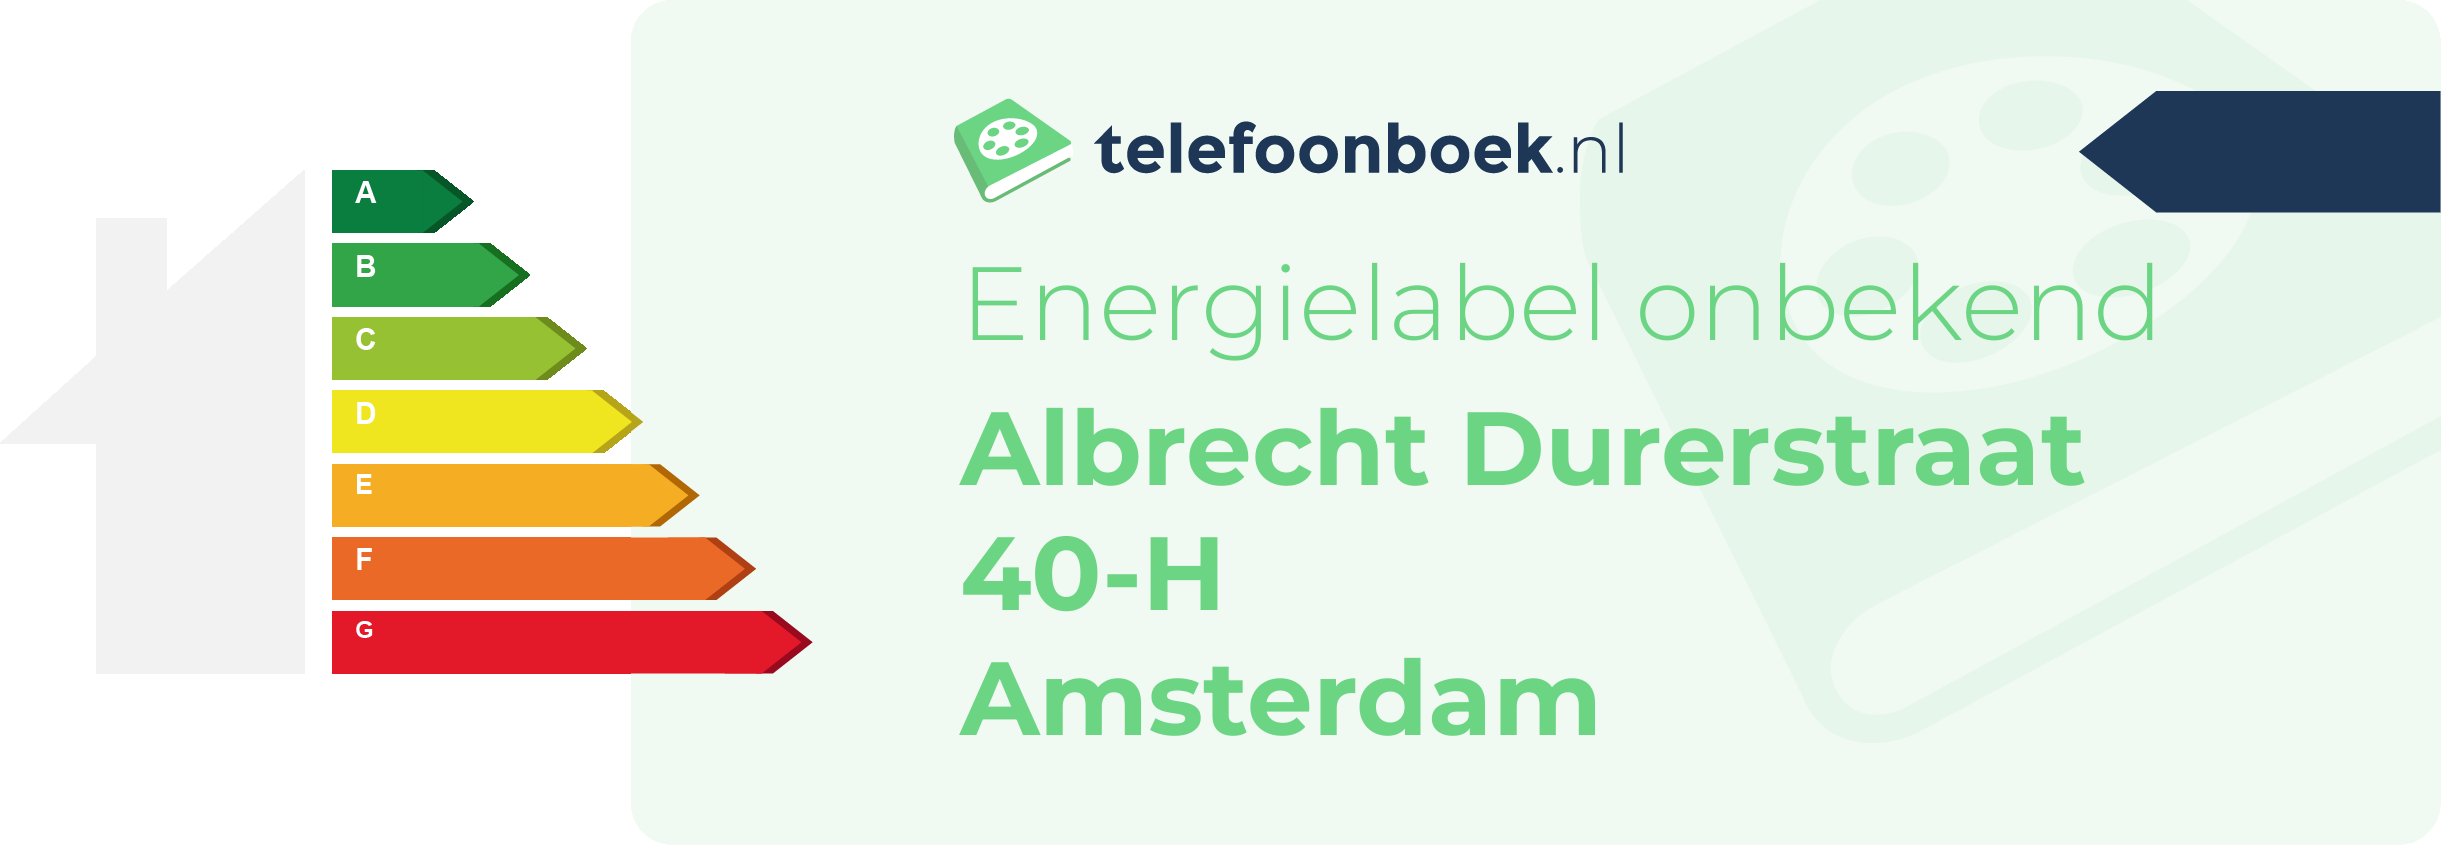 Energielabel Albrecht Durerstraat 40-H Amsterdam